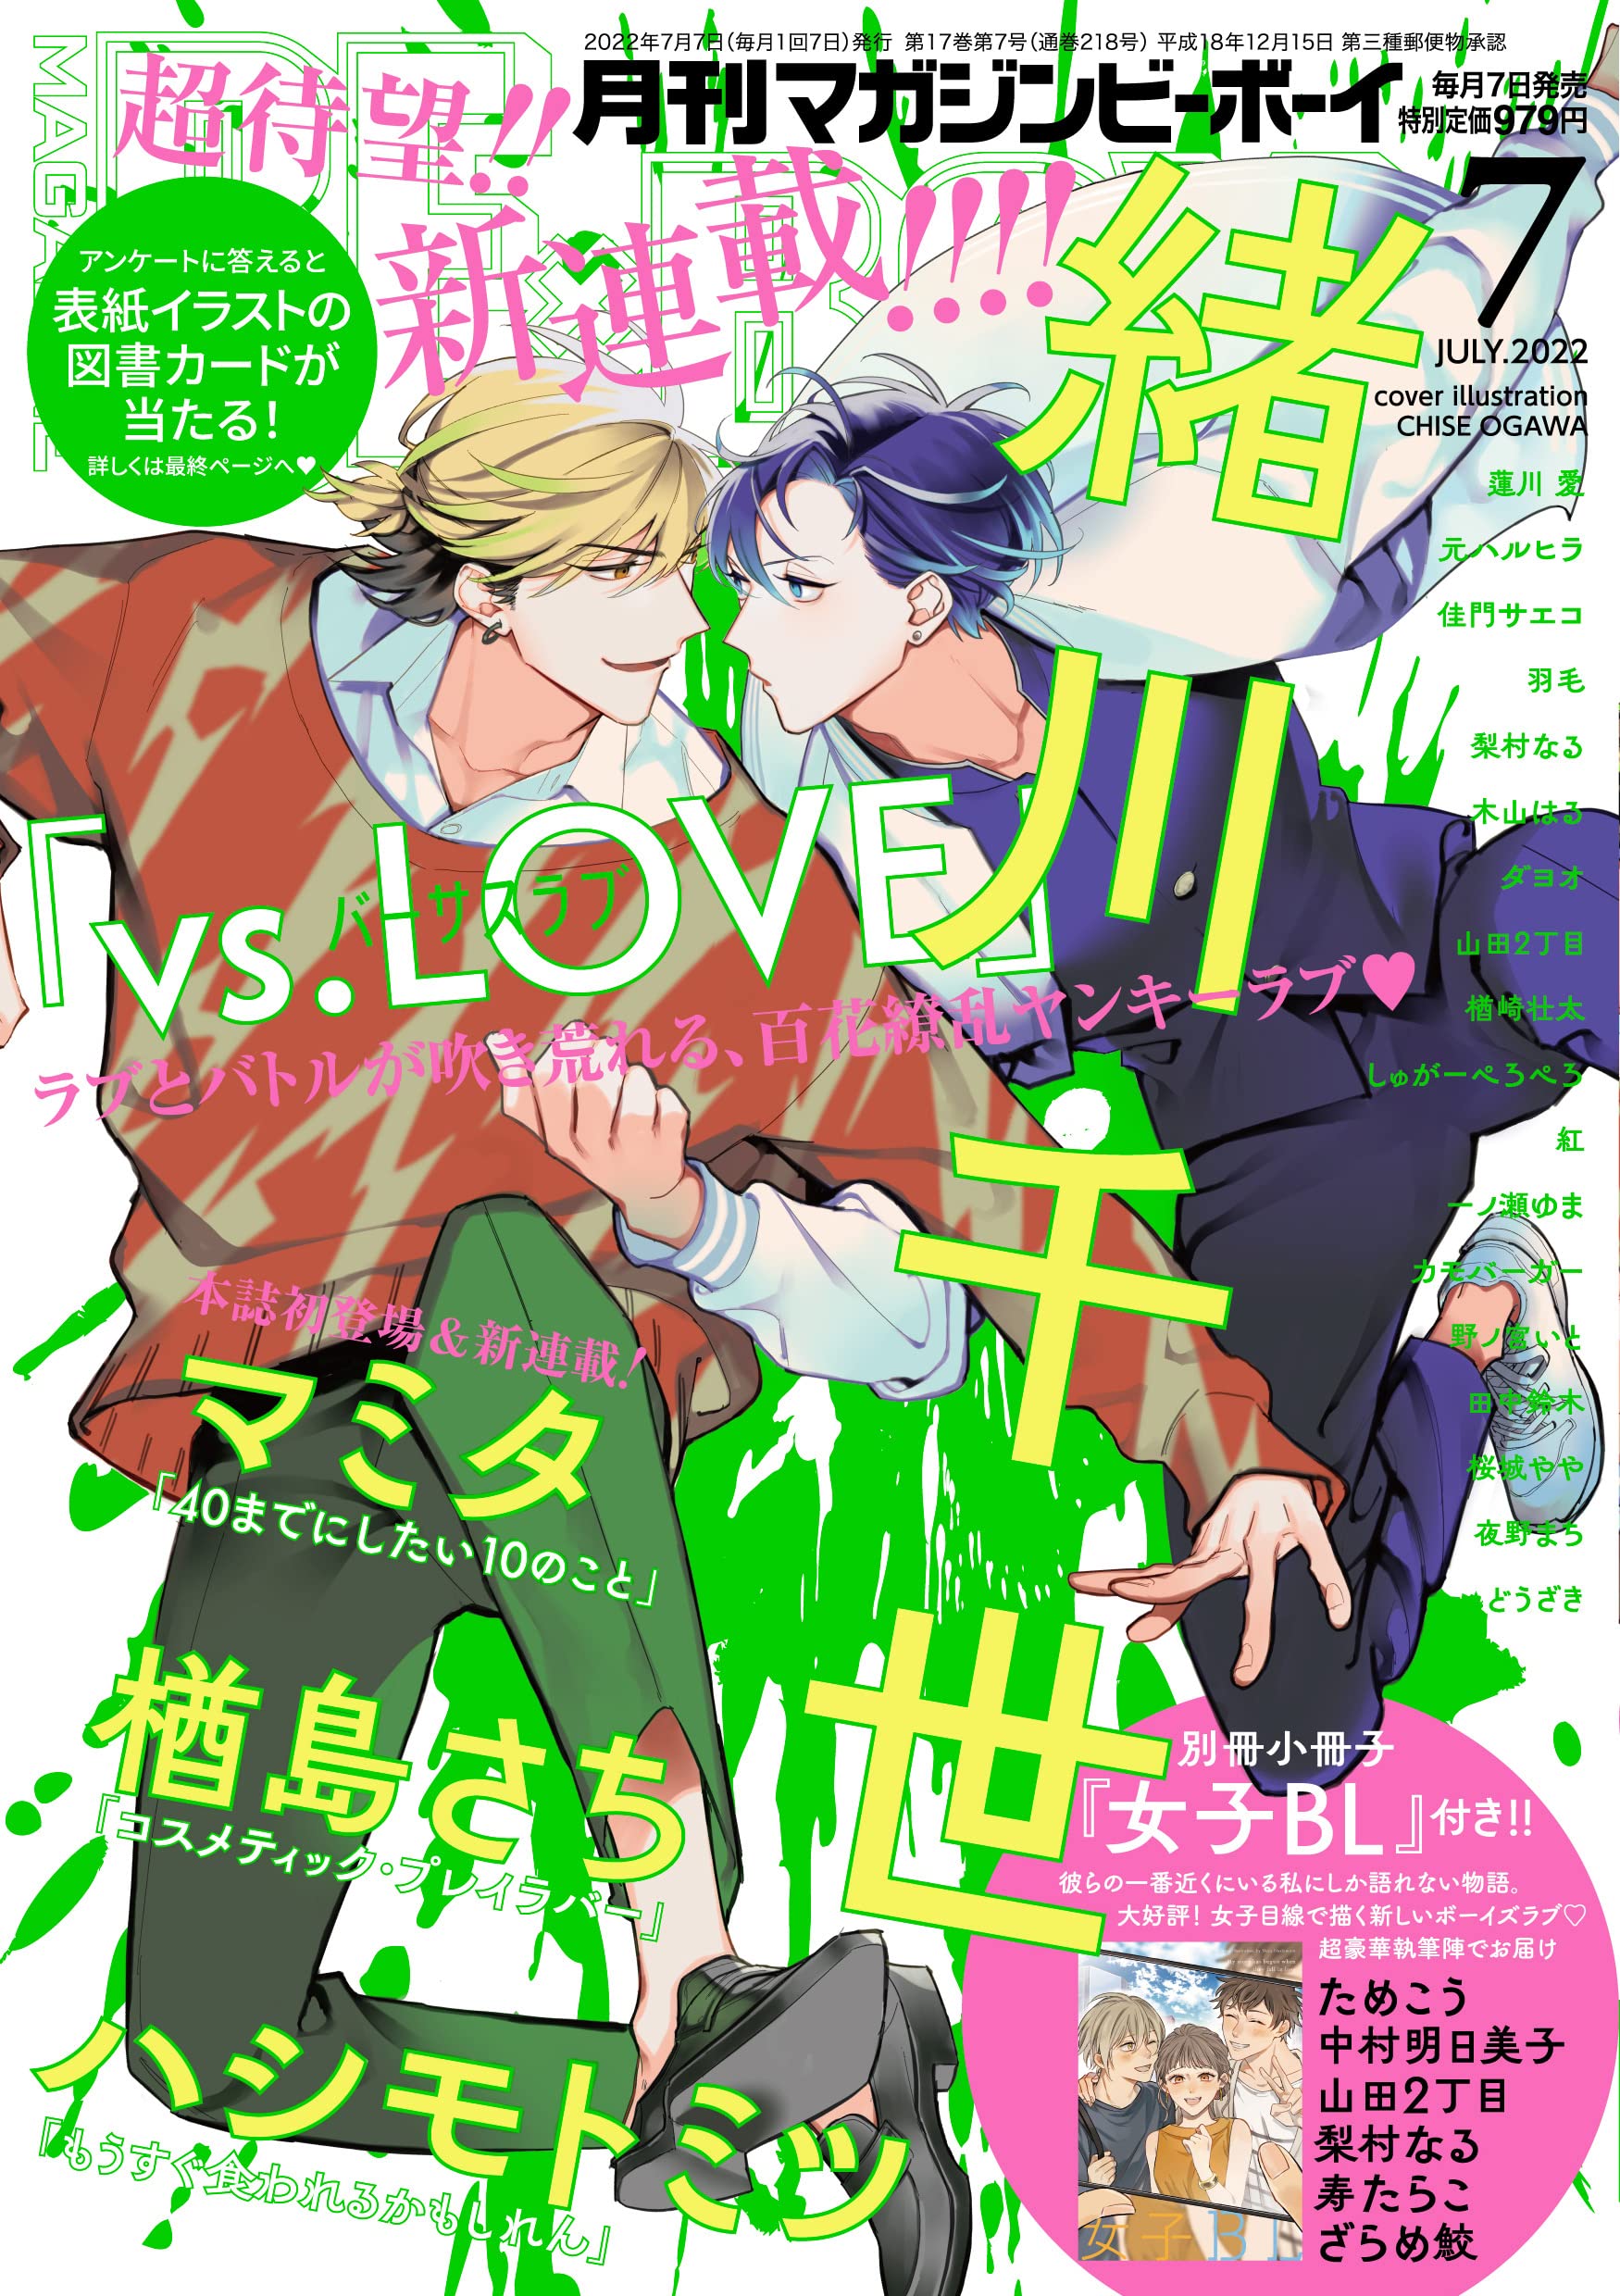 Boys Love (Yaoi) Magazine - MAGAZINE BE×BOY (MAGAZINE BE×BOY (マガジンビーボーイ) 2022年07月号[雑誌]) / Tanaka Suzuki & Sakuragi Yaya & Ogawa Chise & 紅 & Hasukawa Ai